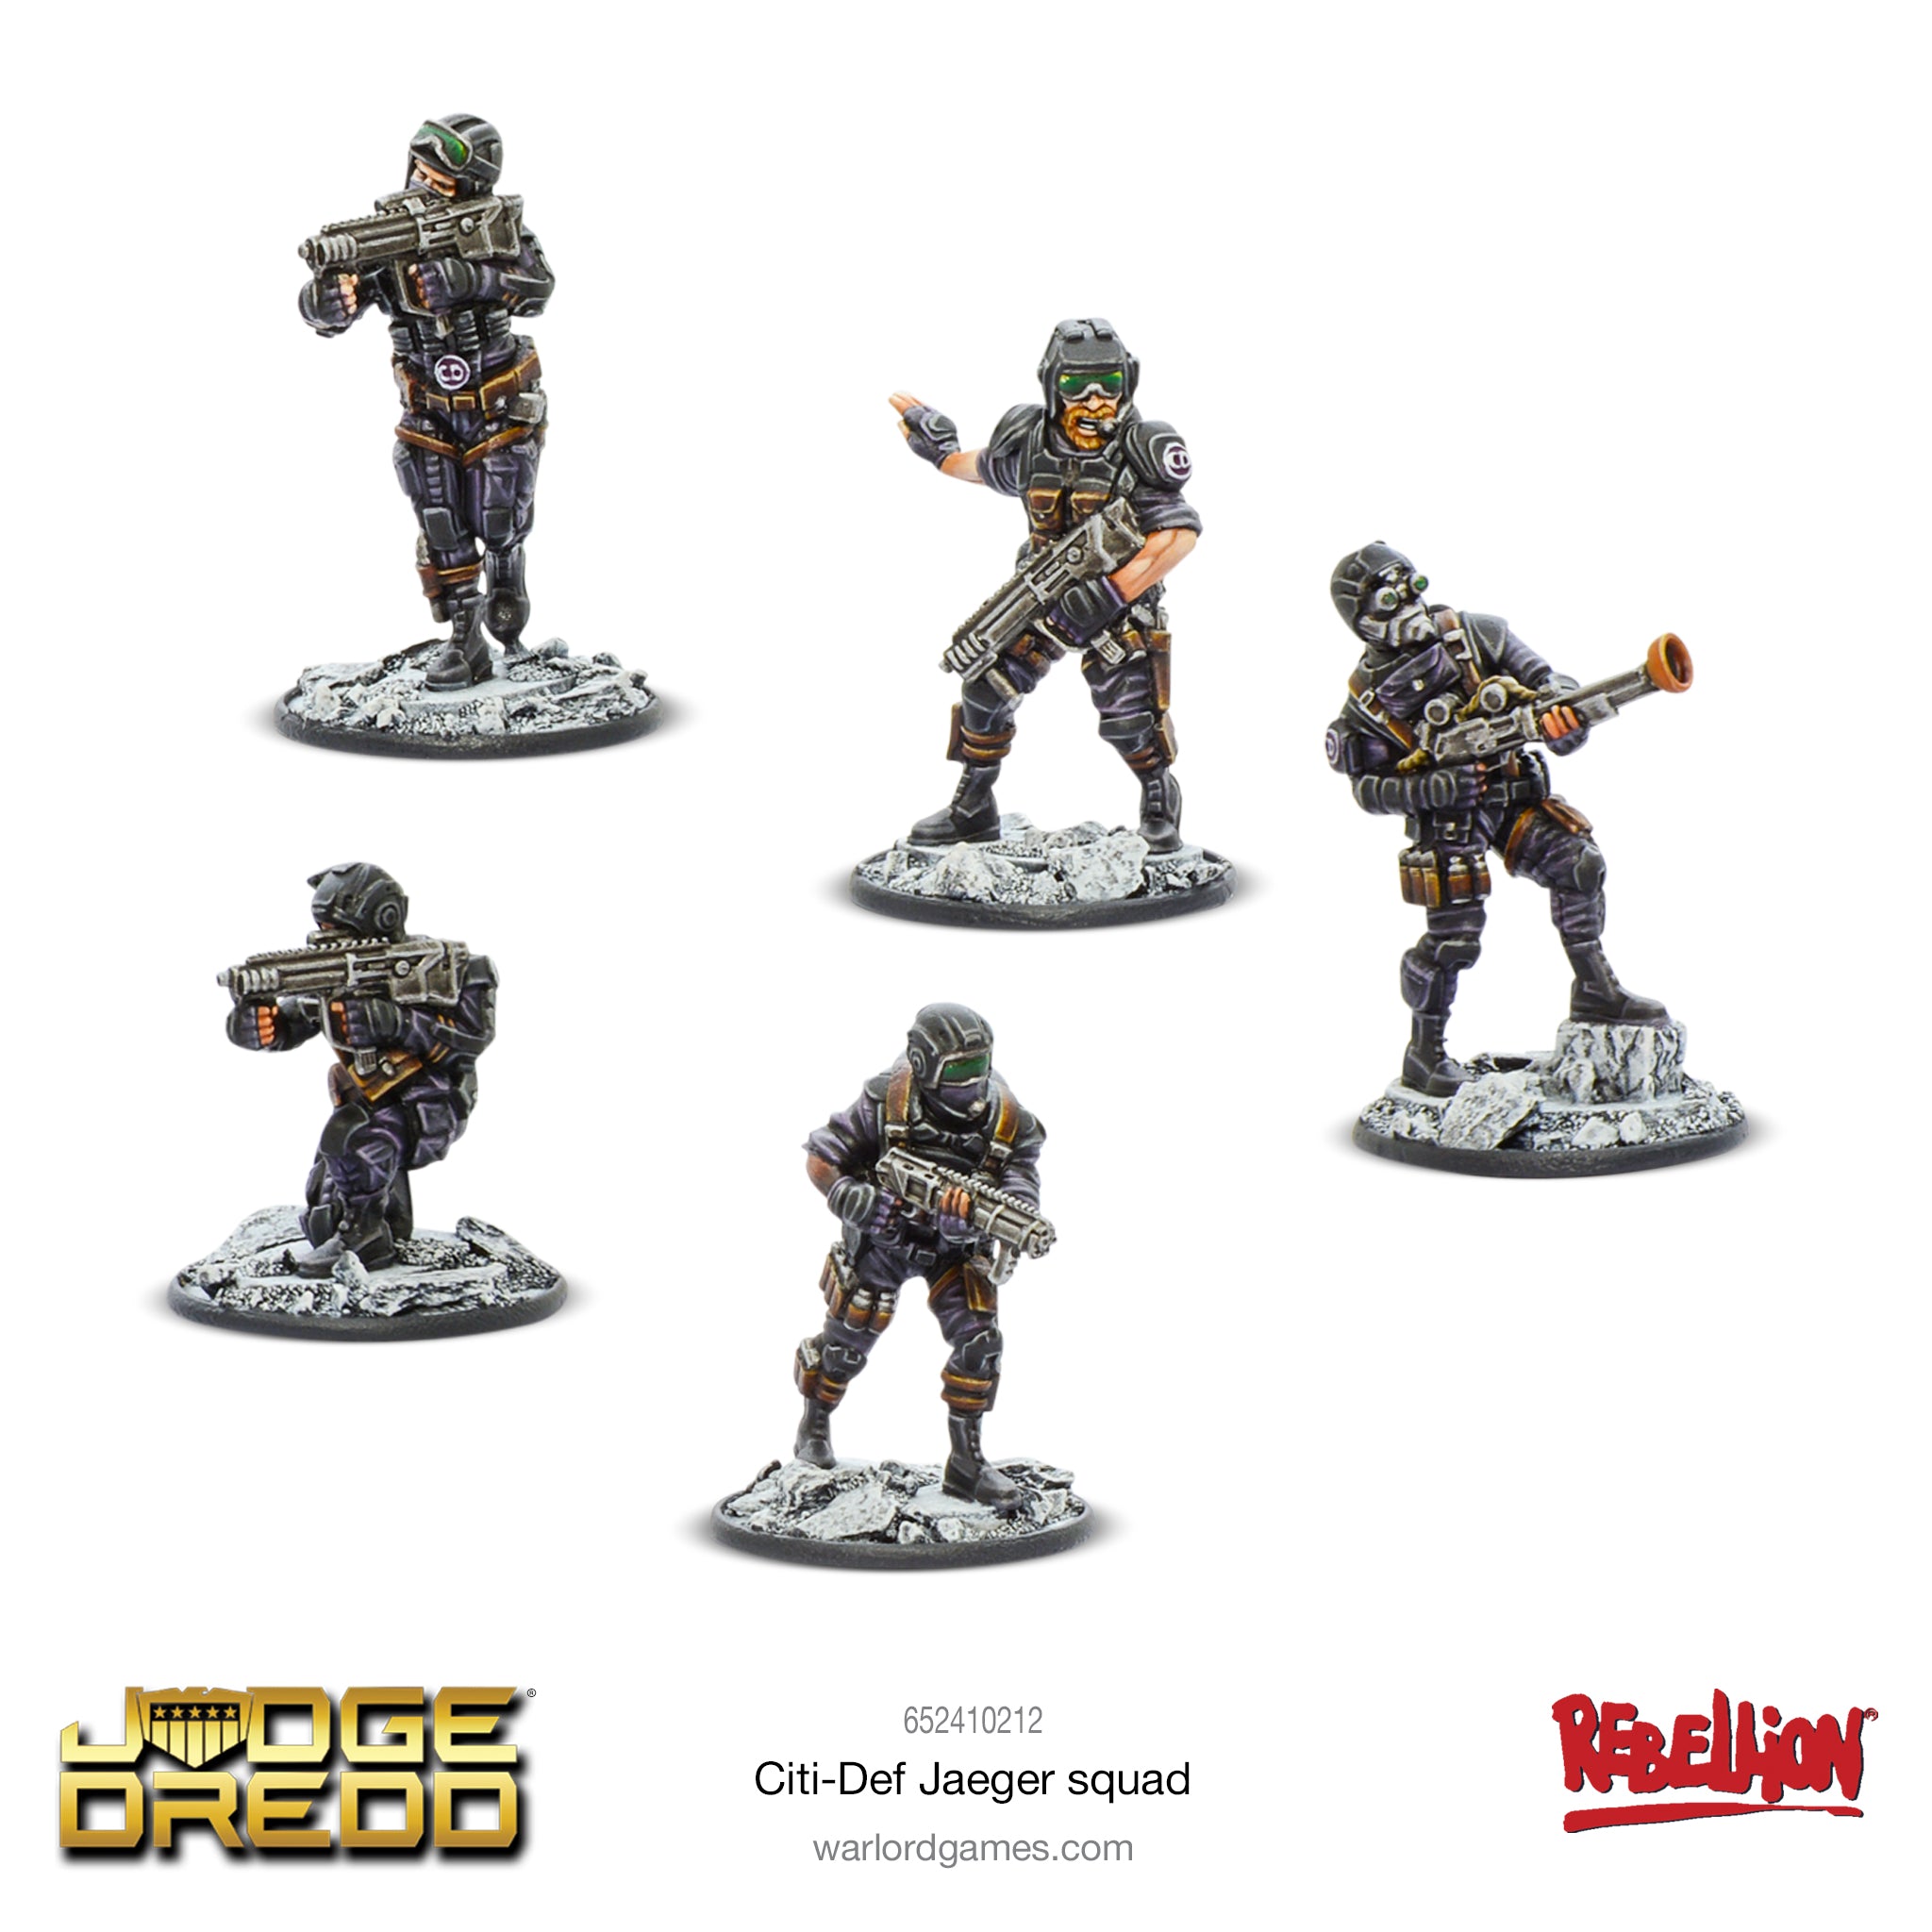 Judge Dredd: Citi-Def Jaeger squad